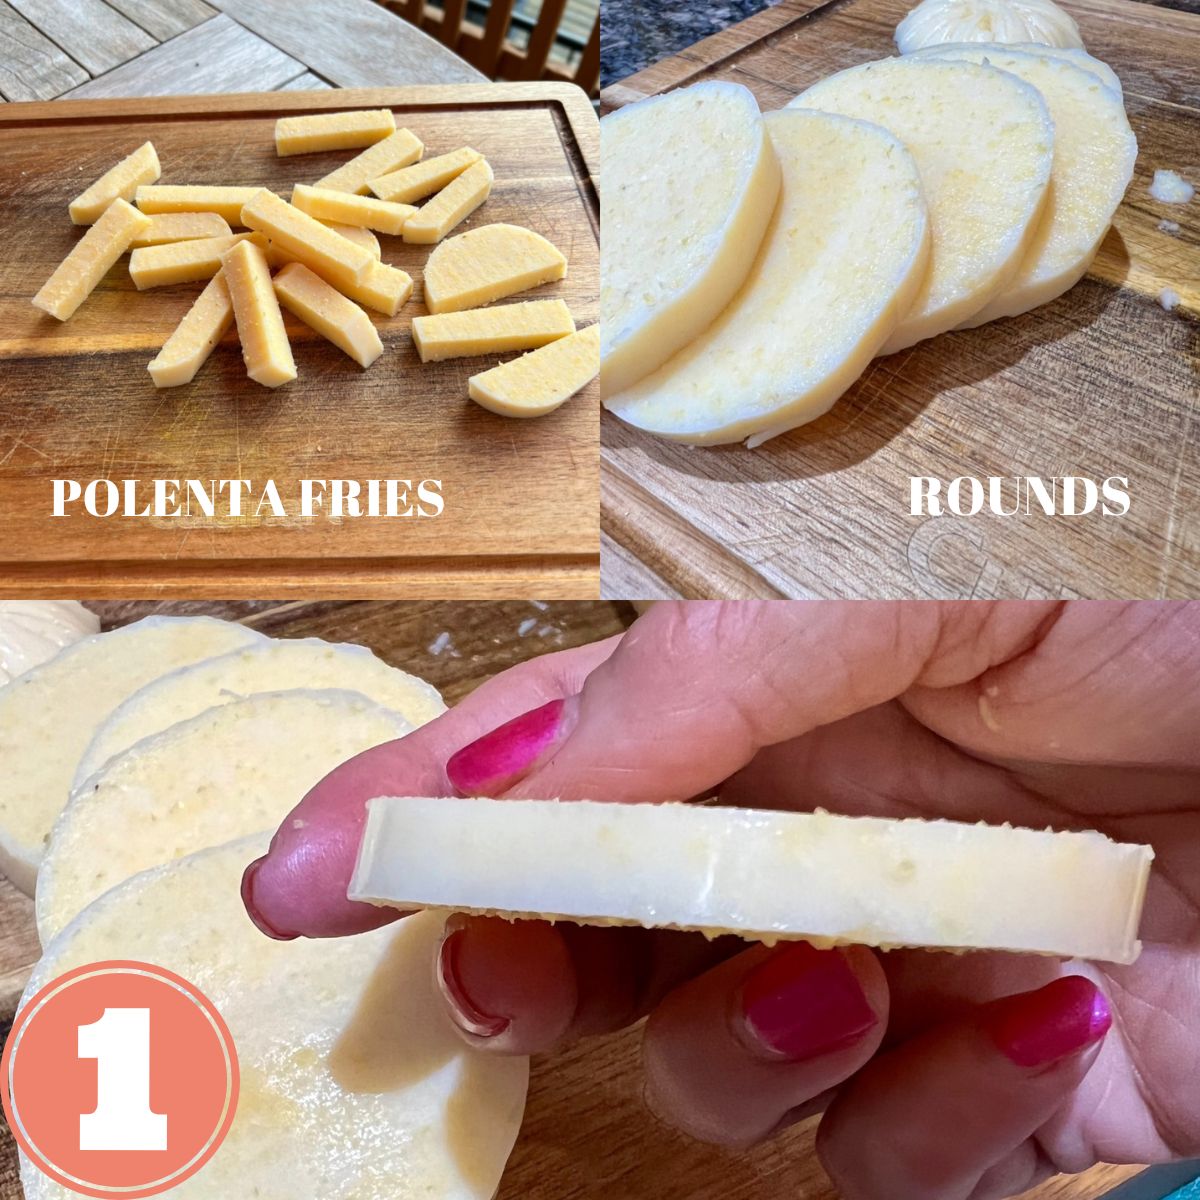 Polenta sticks and polenta slices and polenta rounds